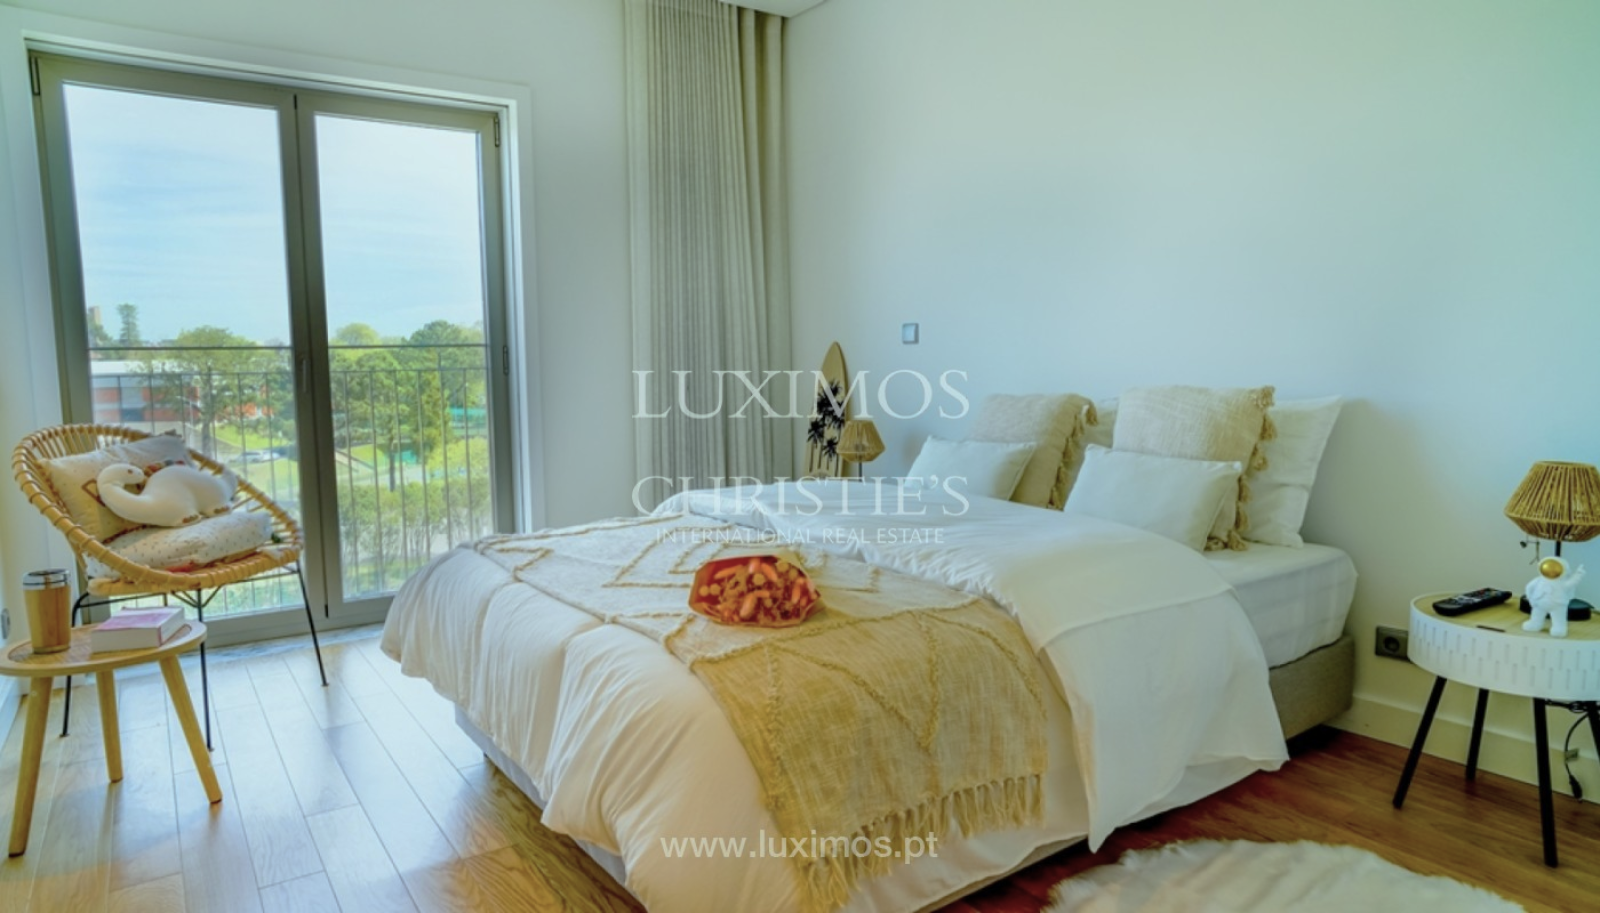 Vier-Zimmer-Wohnung mit Flussblick in Foz, zu verkaufen, Porto, Portugal_261088